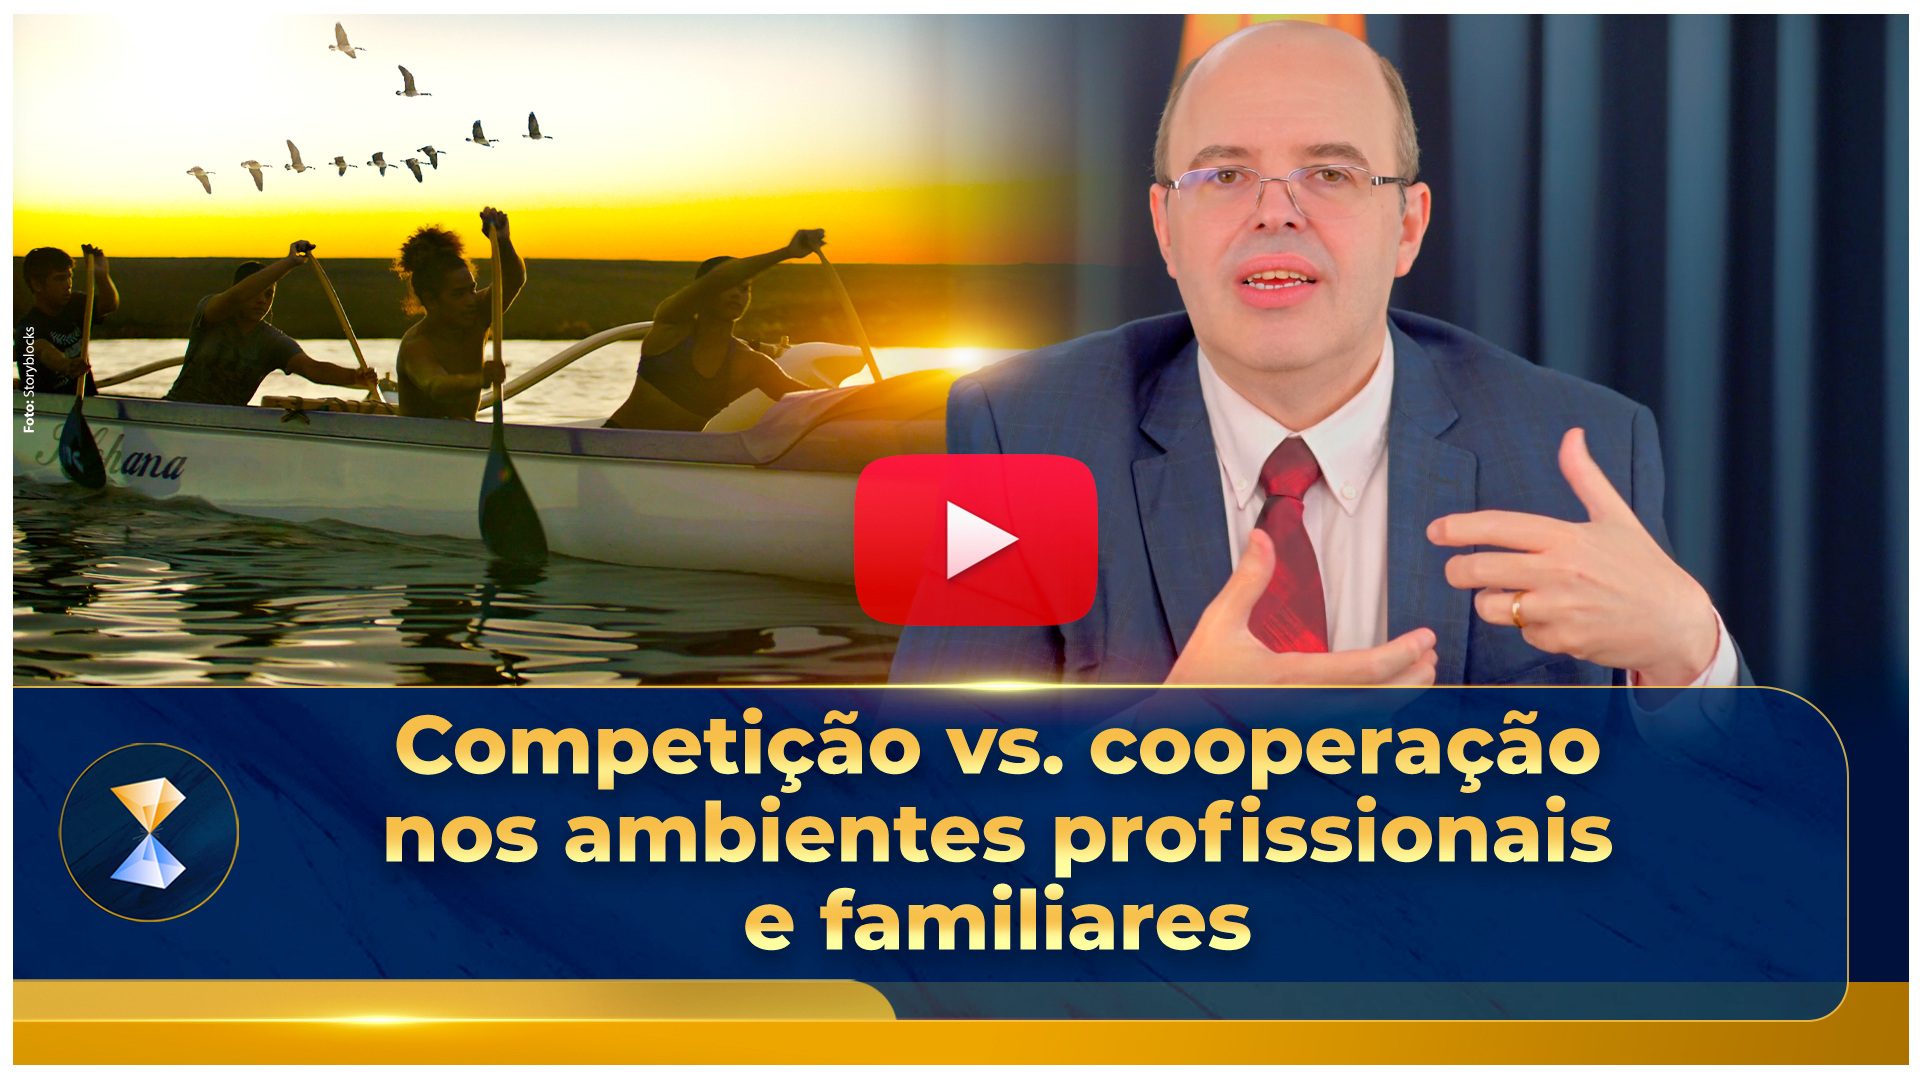 Competição vs. cooperação nos ambientes profissionais e familiares